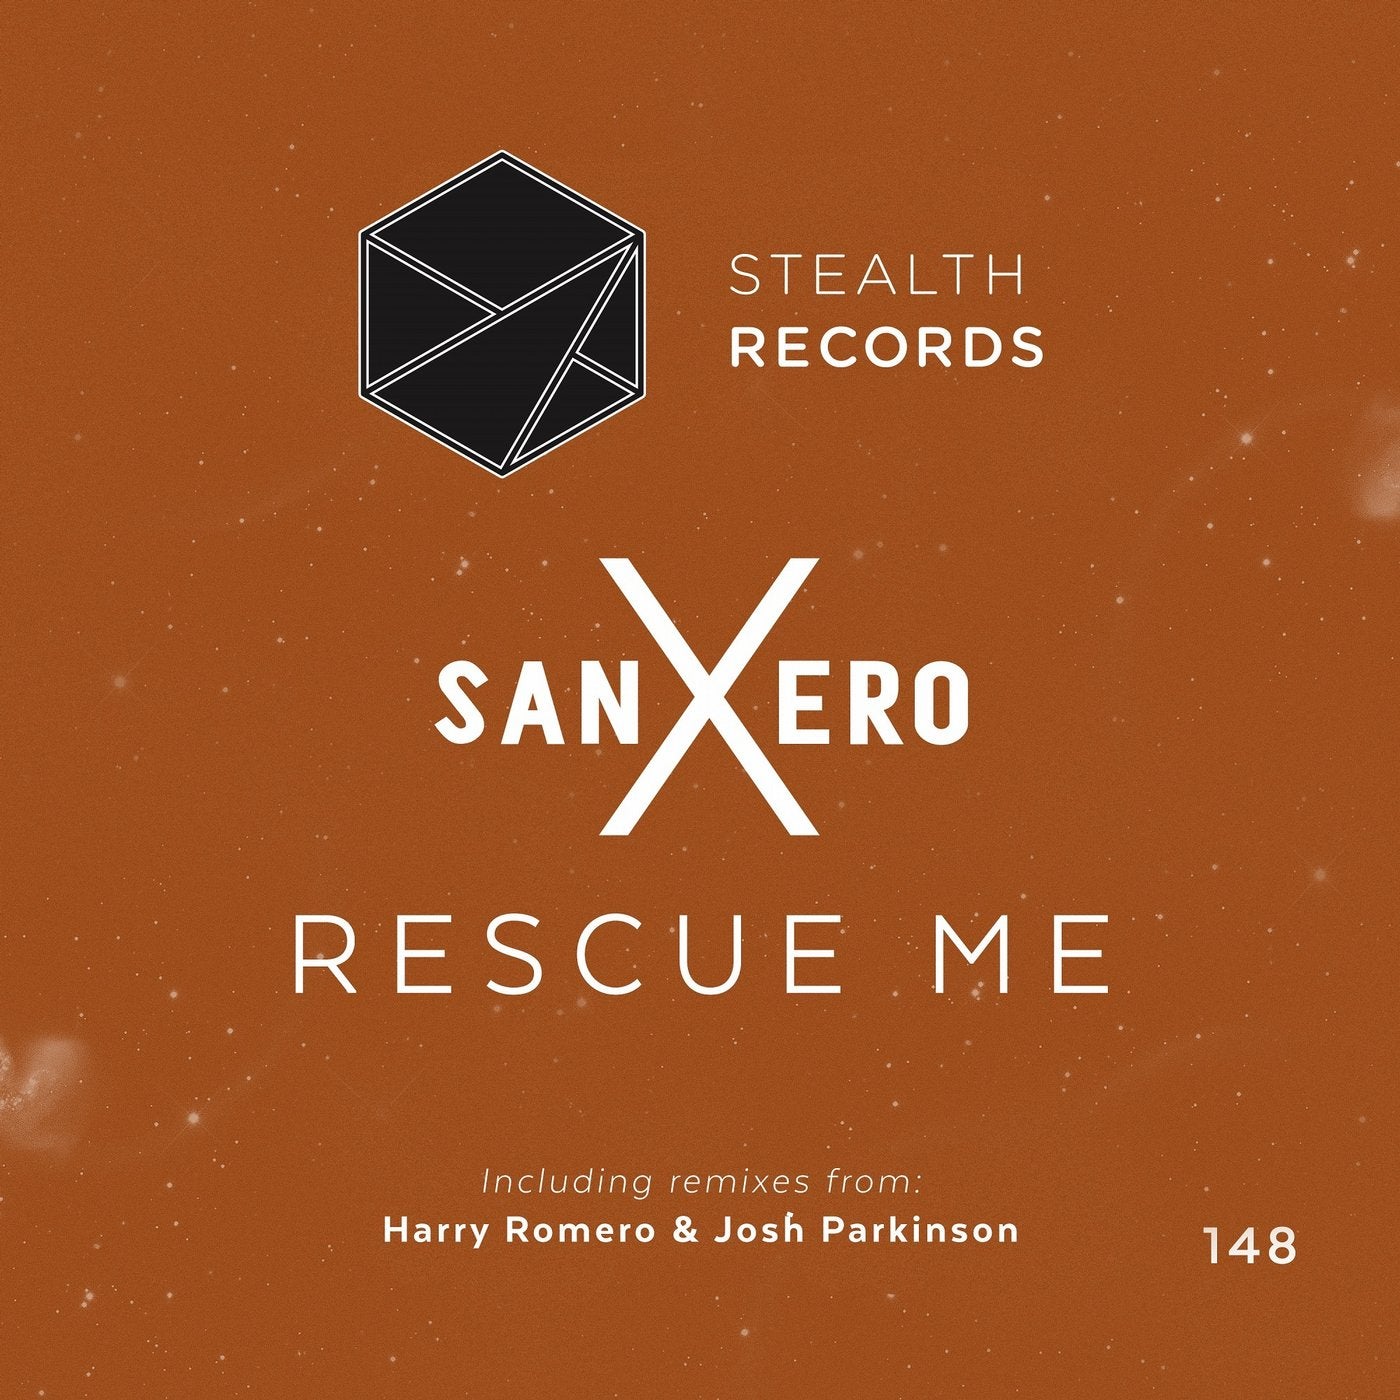 Rescue me перевод. Like Harry Remix.